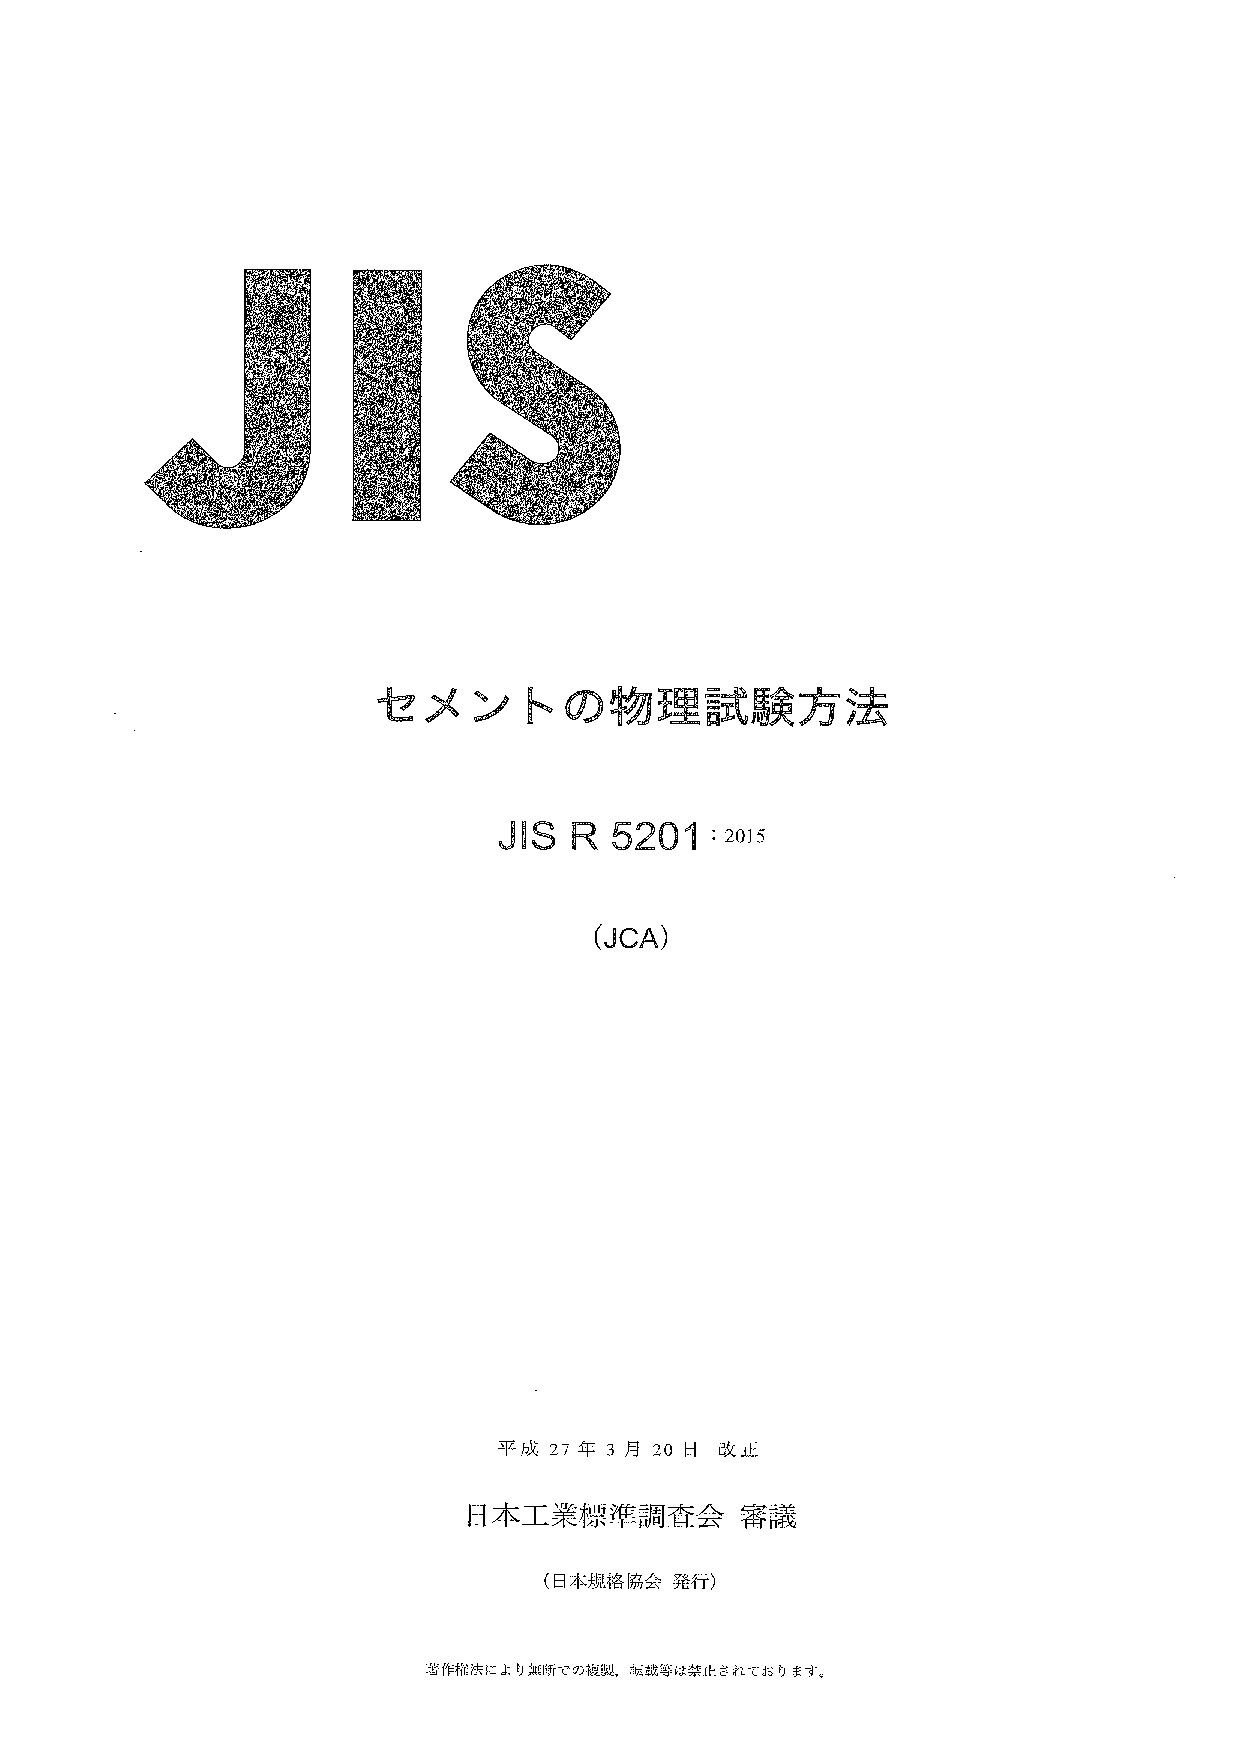 JIS R 5201:2015封面图